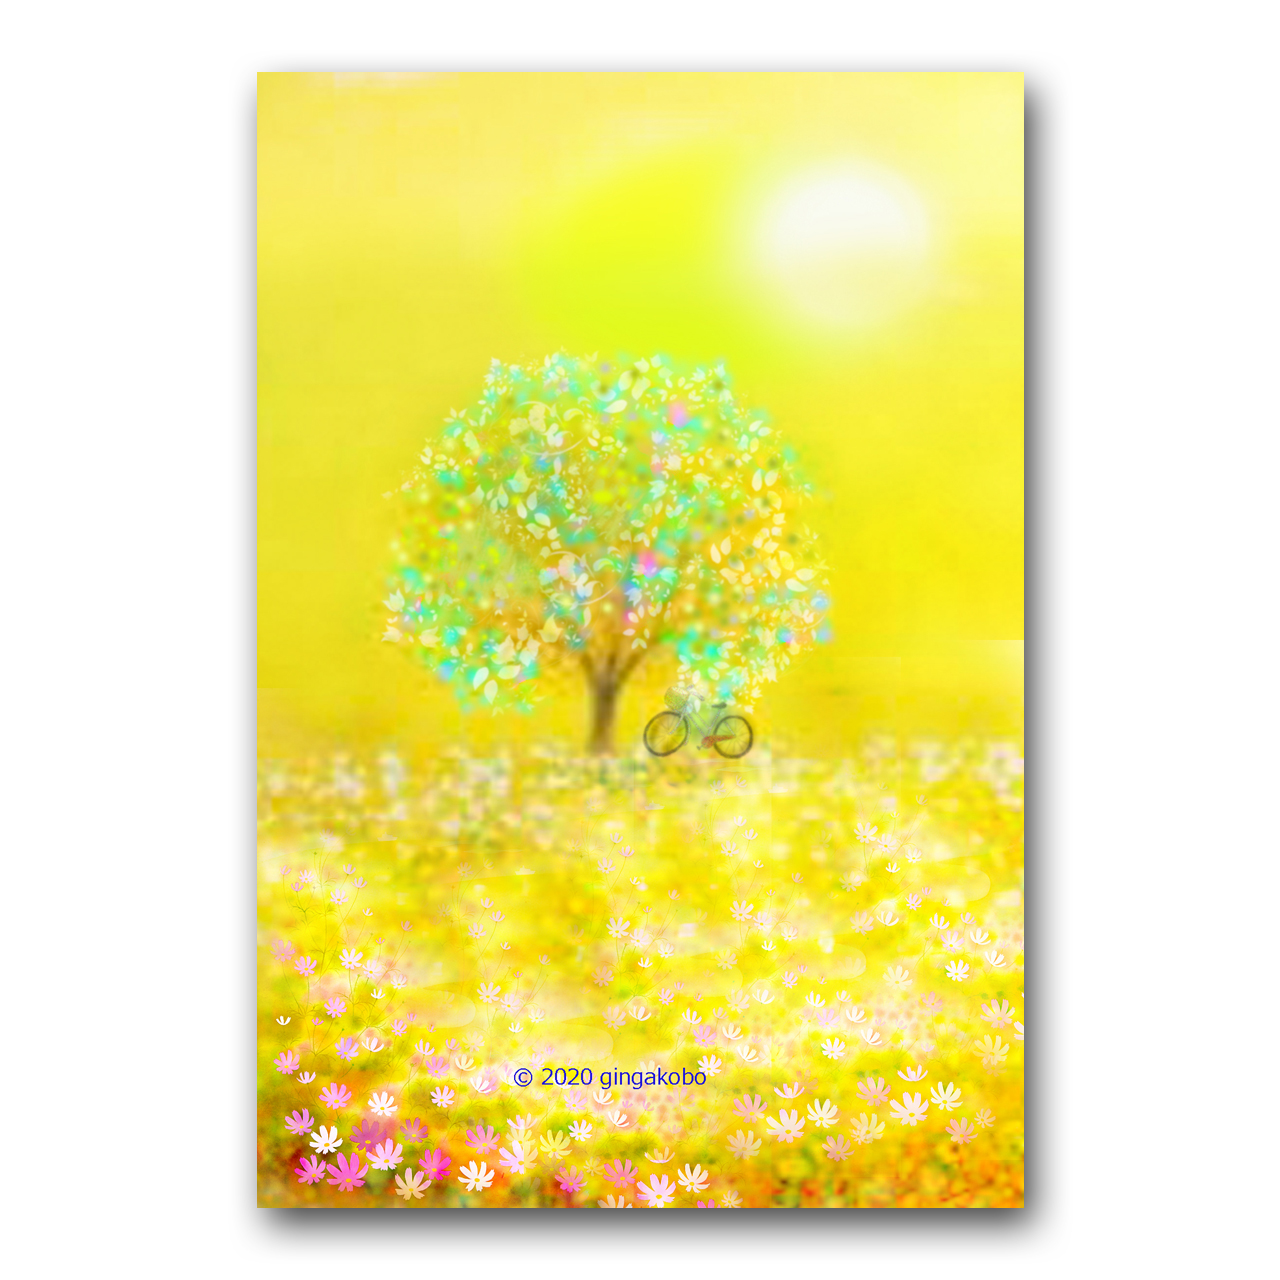 天気だけが明日を見てる秋の日 ほっこり癒しのイラストポストカード2枚組 No 1192 Iichi ハンドメイド クラフト作品 手仕事品の通販